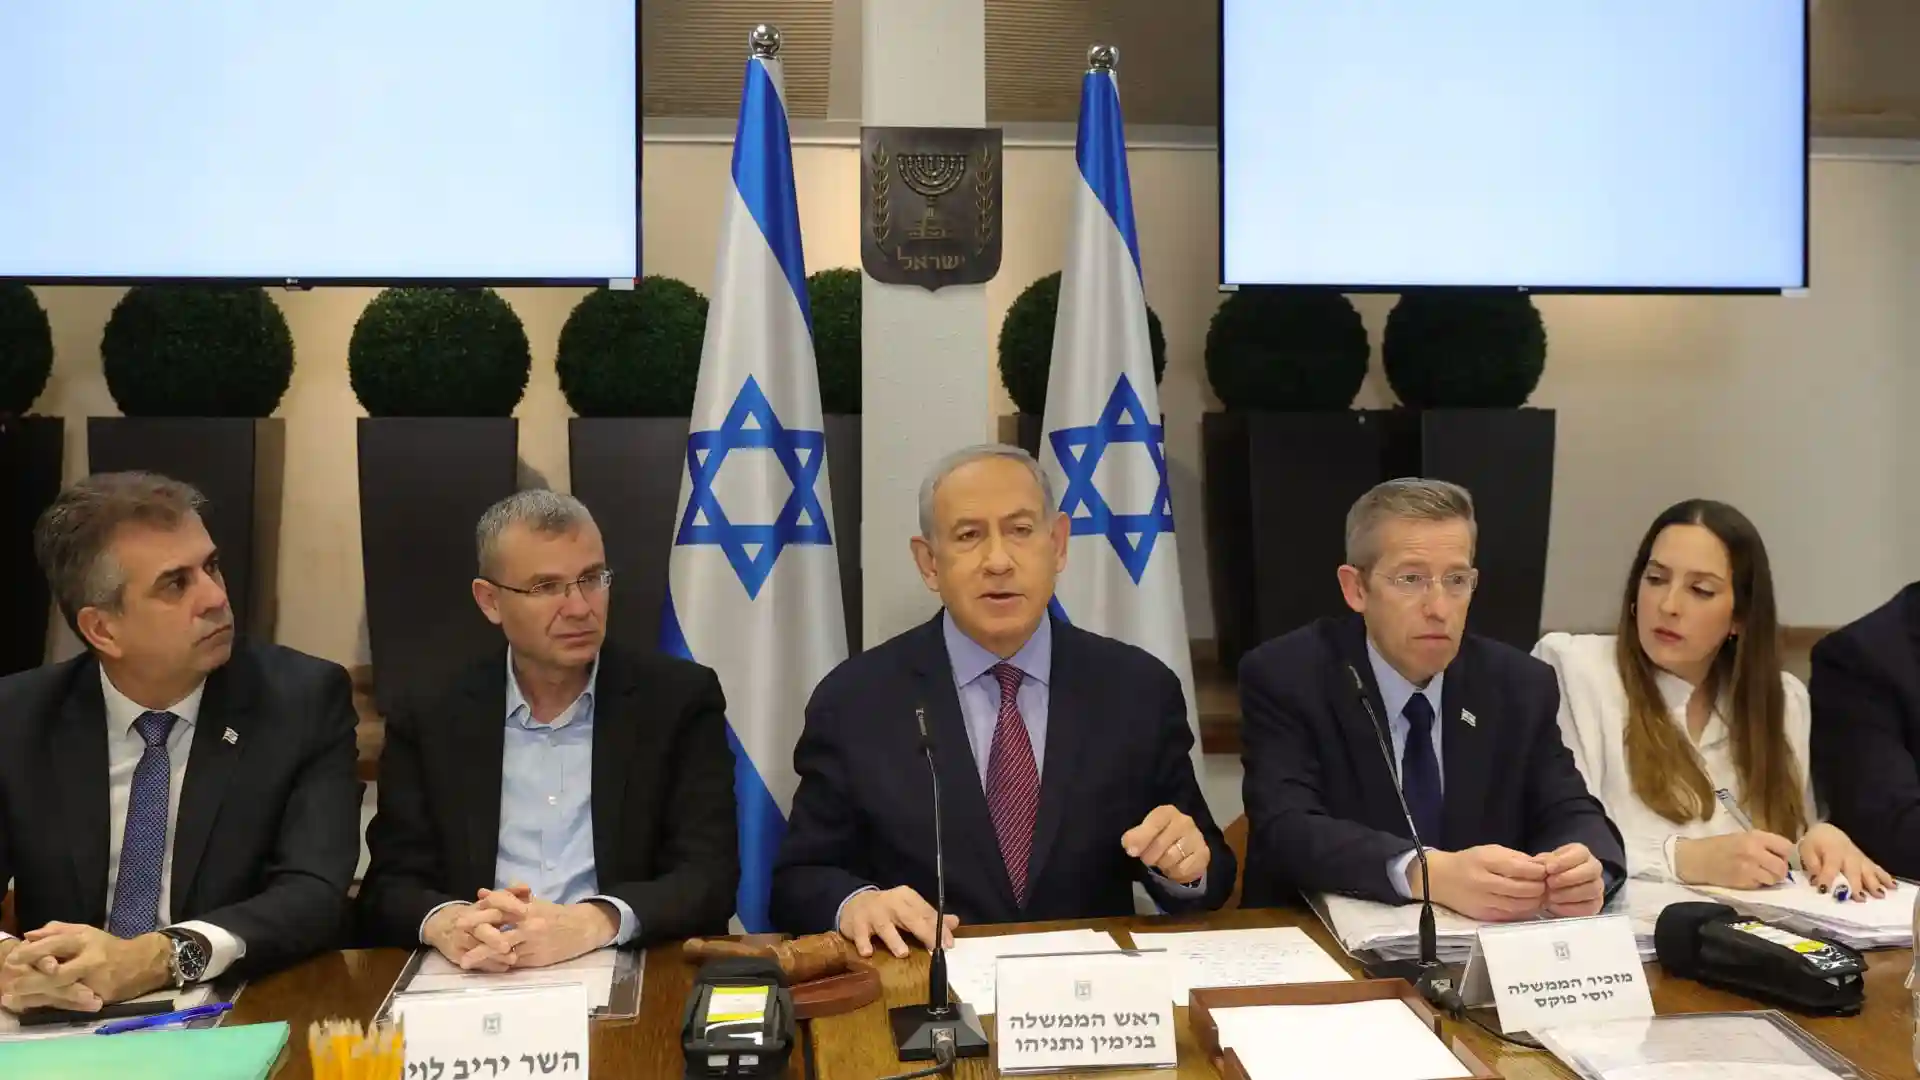 نتنياهو يرد على ادعاء جنوب إفريقيا بارتكاب إسرائيل "إبادة جماعية في غزة"